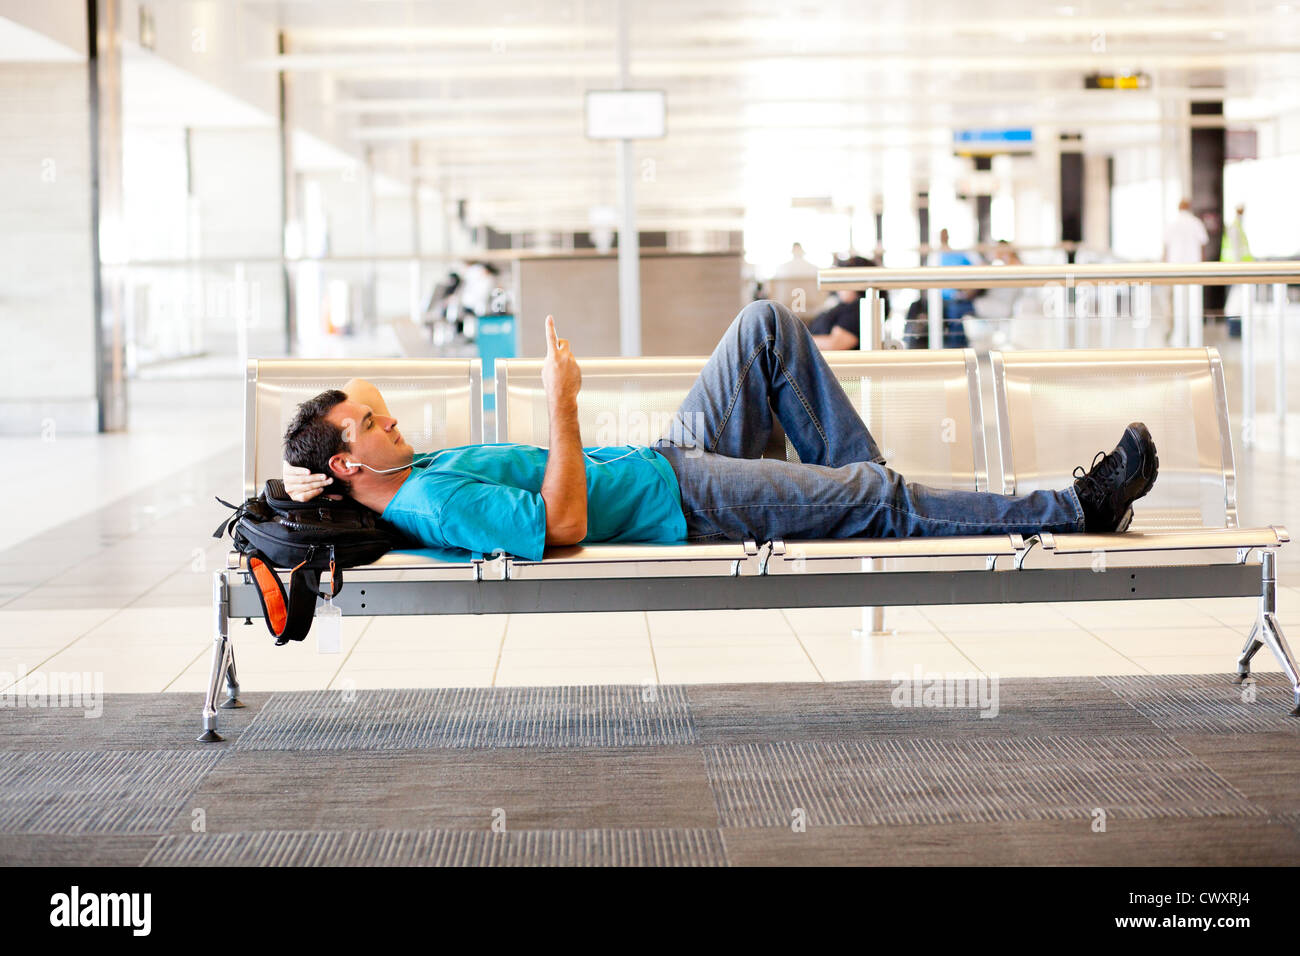 Jeune homme couché sur des chaises de l'aéroport et de repos Banque D'Images